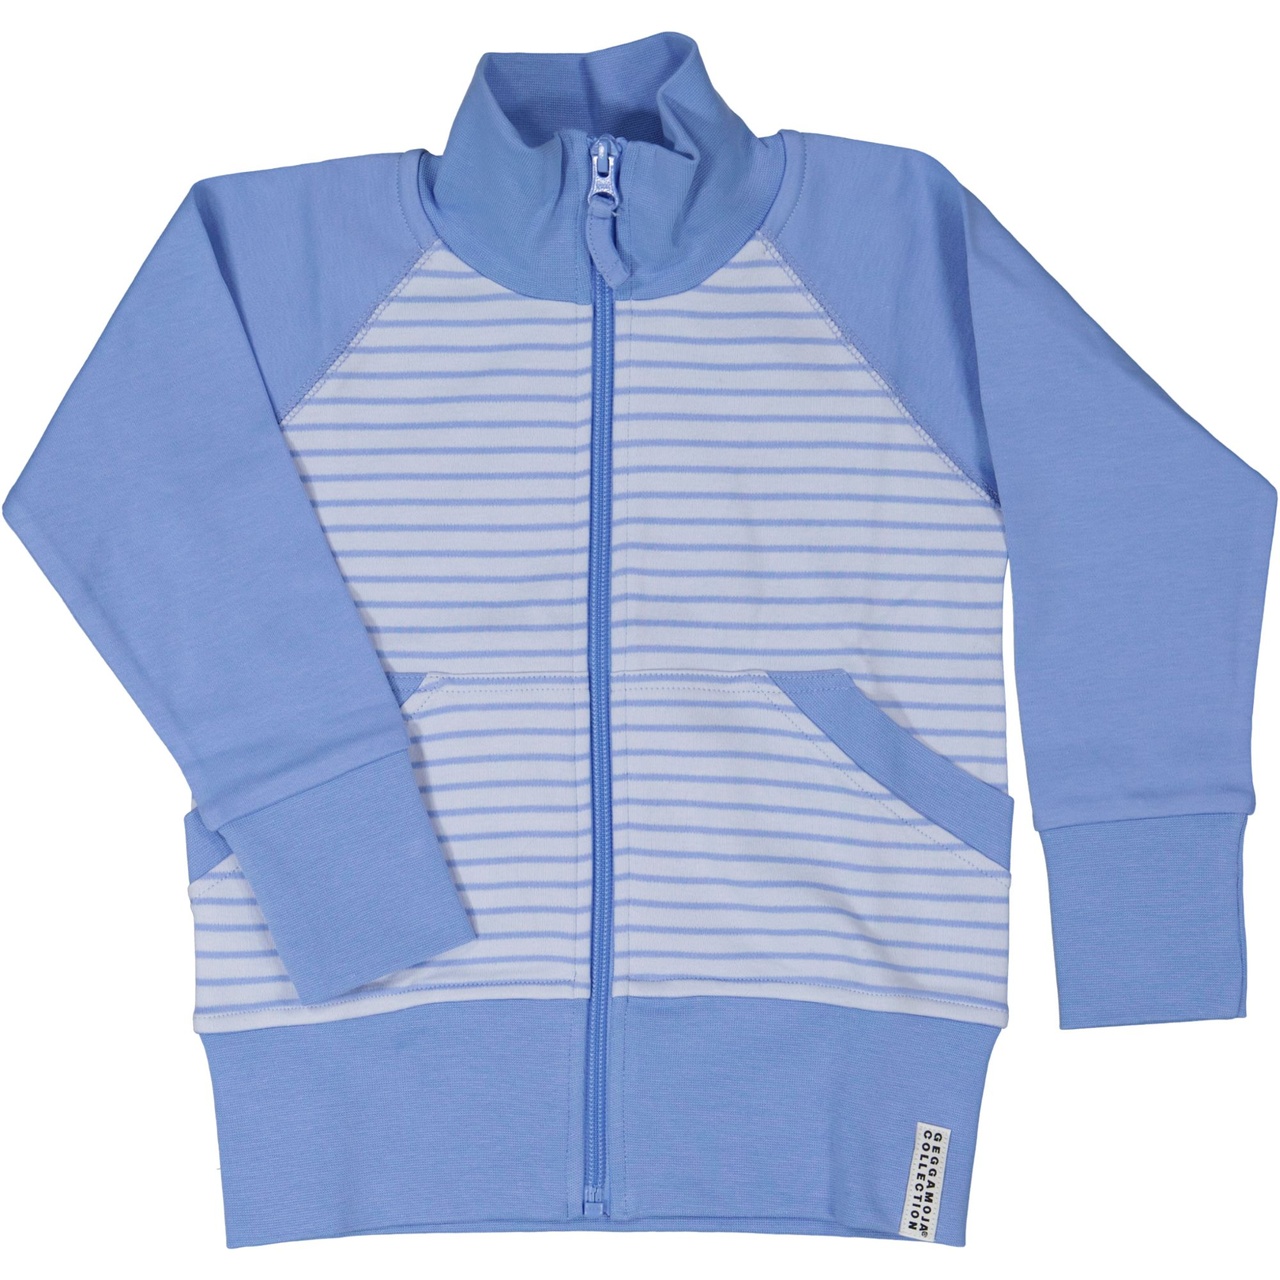 Zip sweater Light blue/blue  86/92